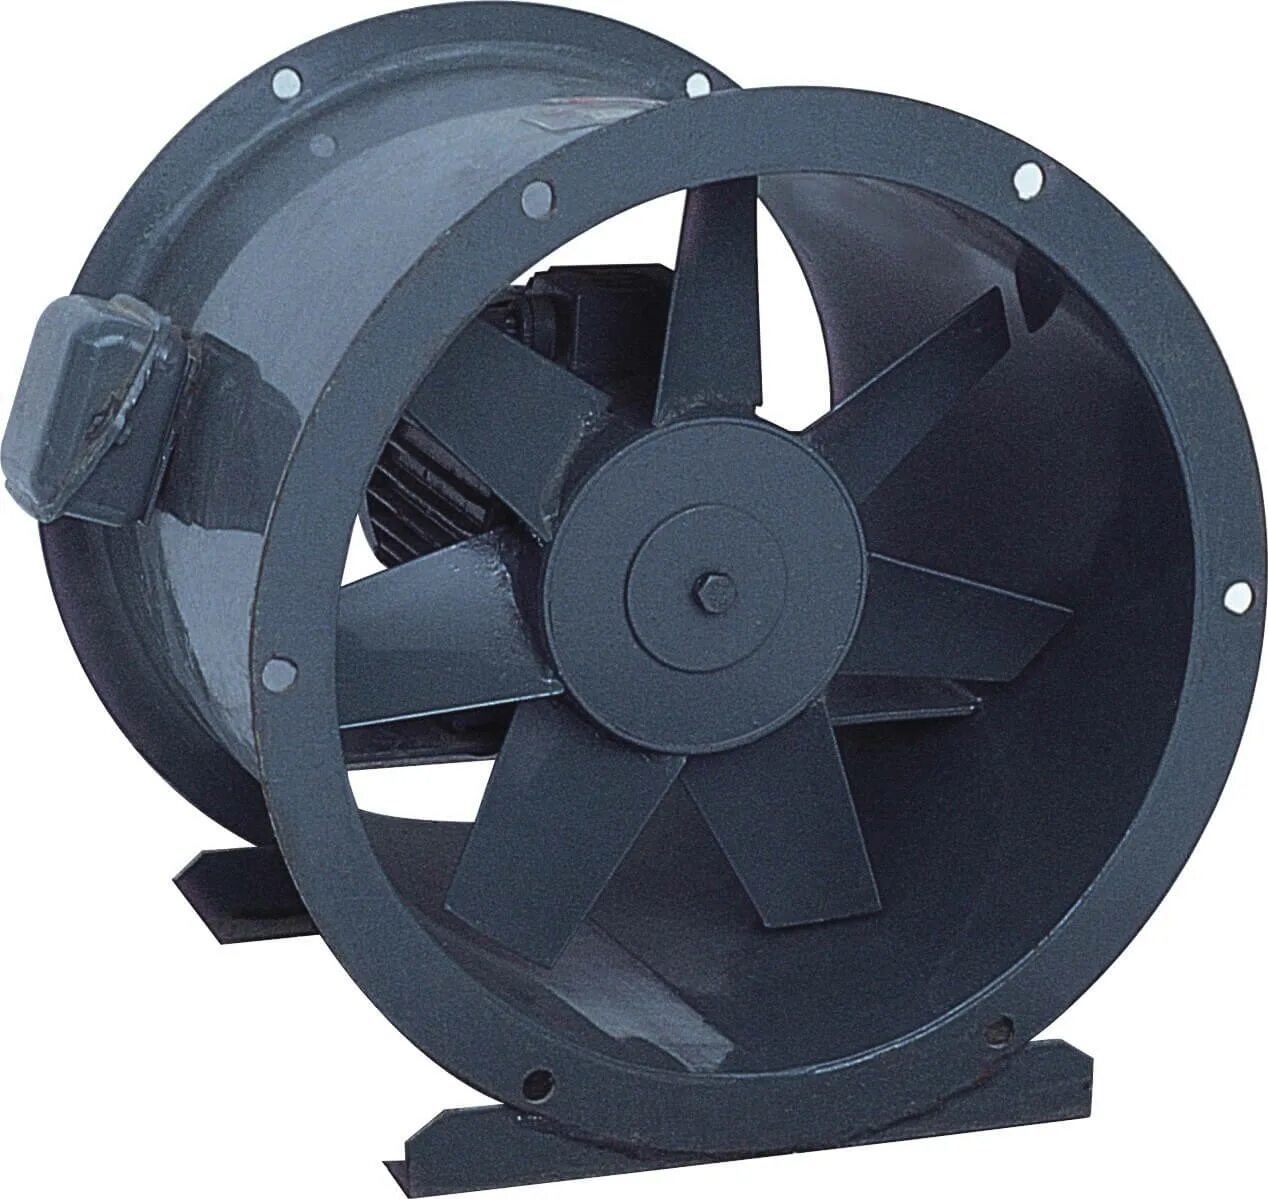 Axial Fan вентилятор. Вентилятор осевой промышленный BSM-500. Вентилятор осевой ПРОМВЕНТ. Вентилятор осевой д110.